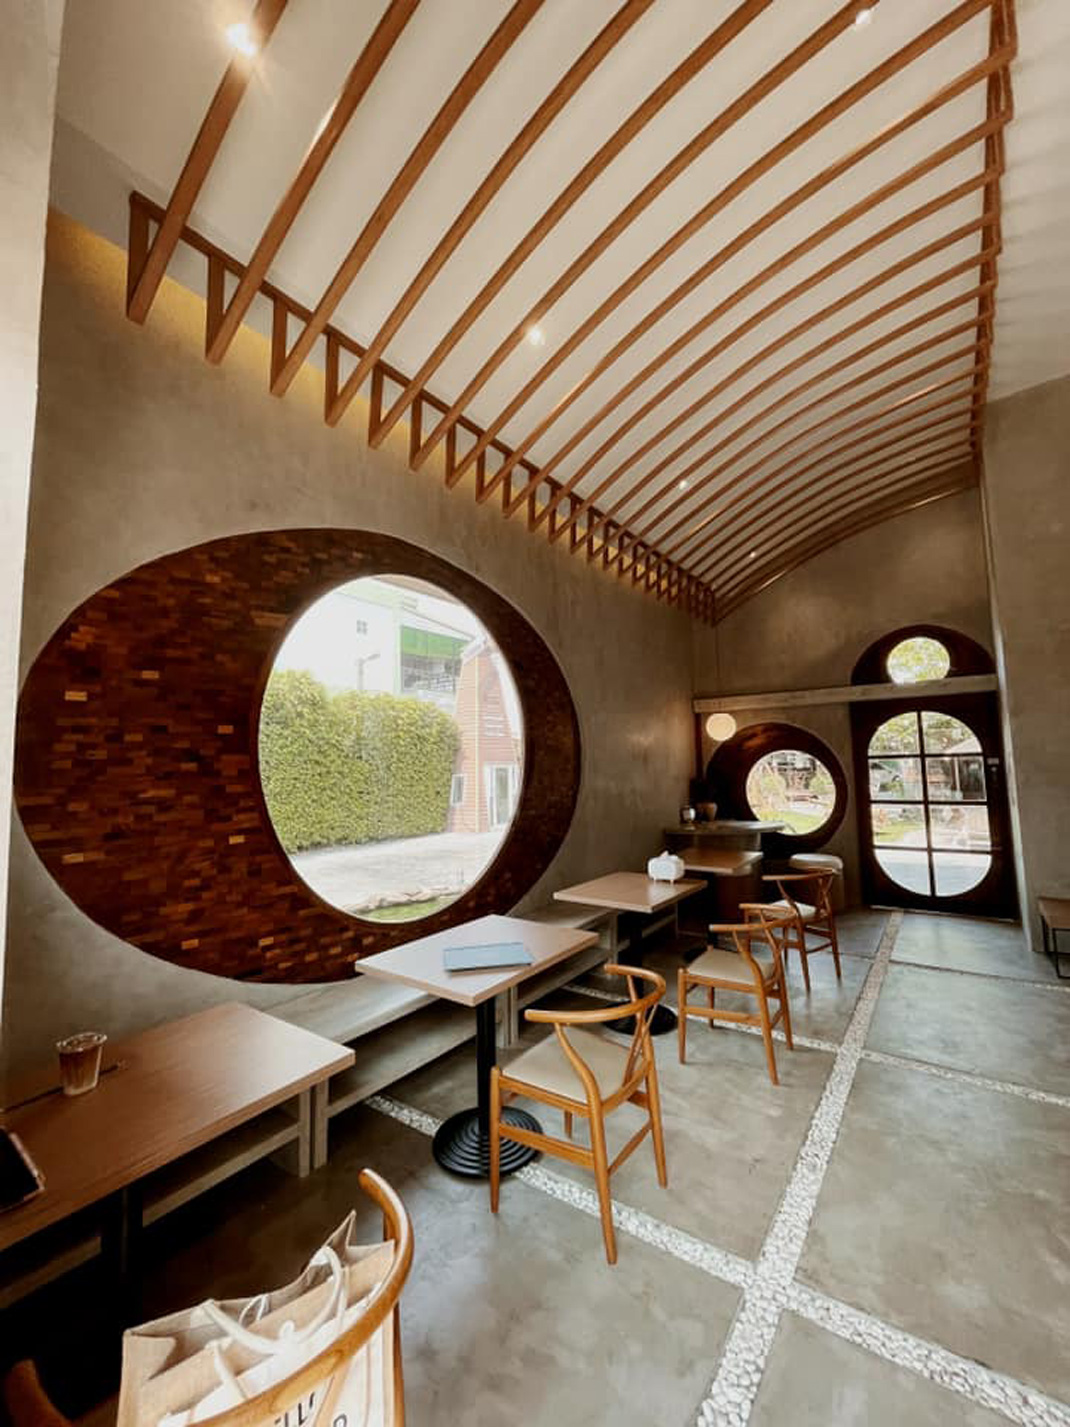 泰国餐厅kamolchanok 泰国 咖啡馆 logo设计 vi设计 空间设计